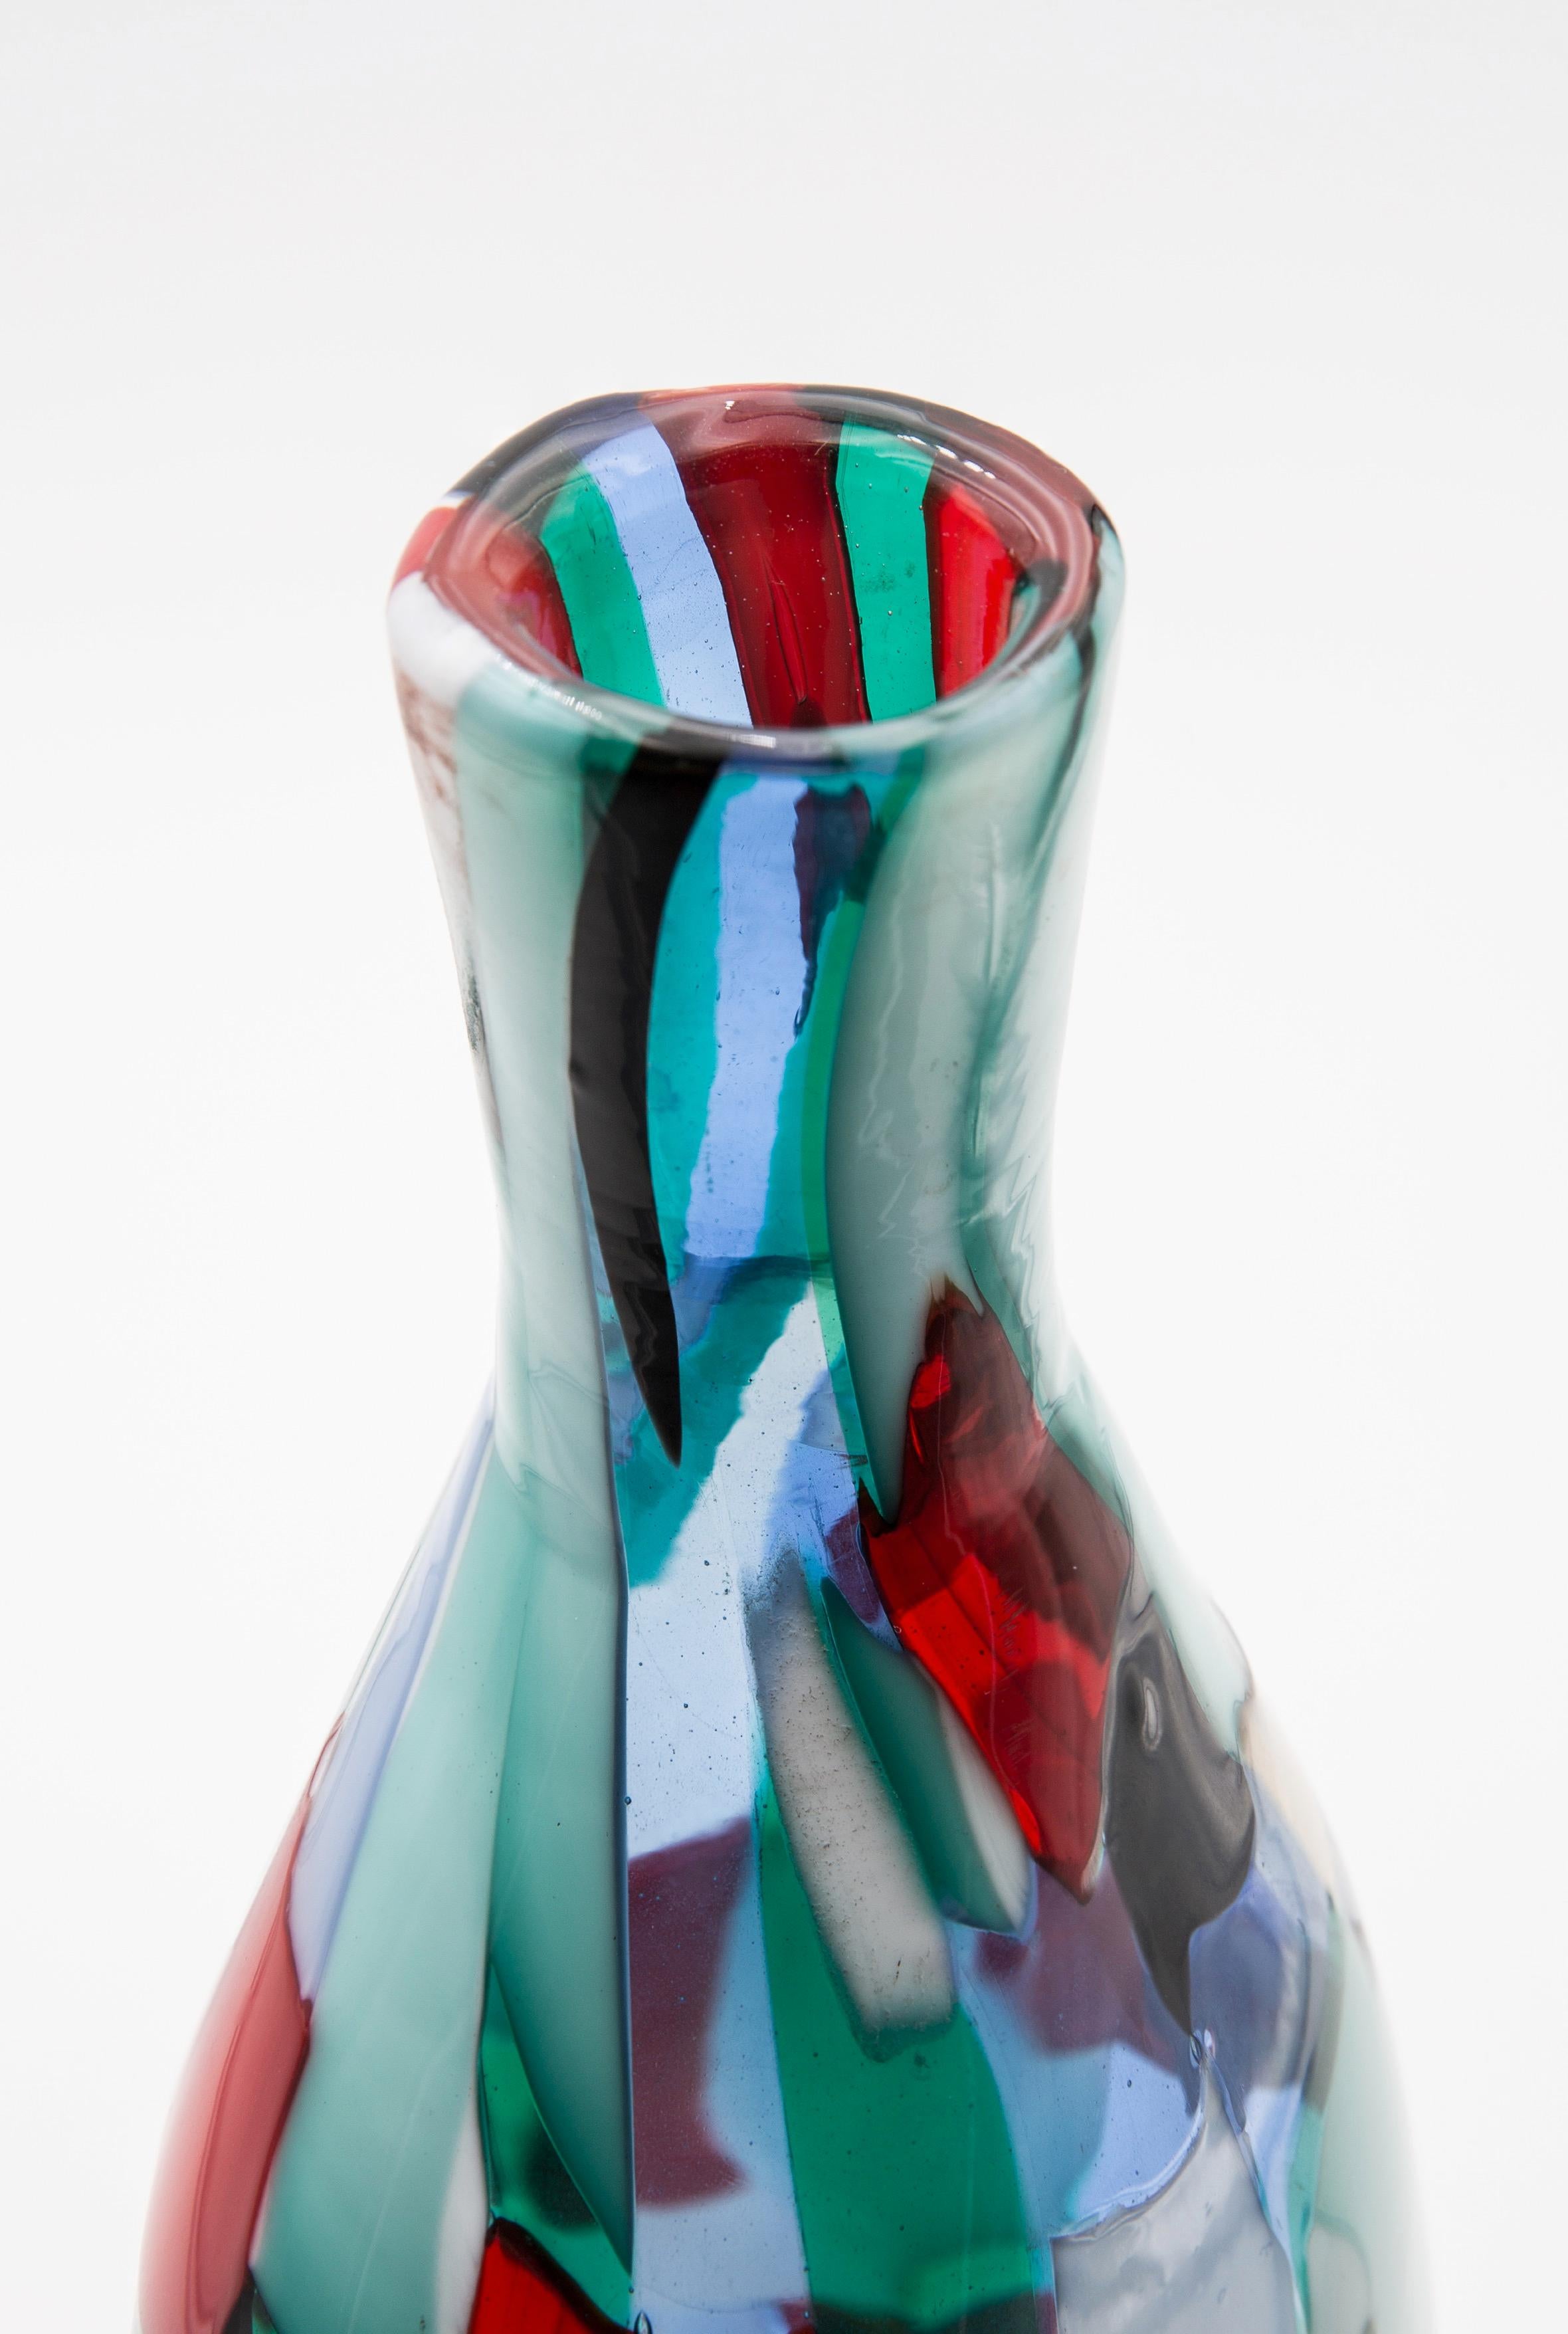 Mid-20th Century Venini Murano Fulvio Bianconi Glass Vase, Technique Pezzato, Arlecchino Color